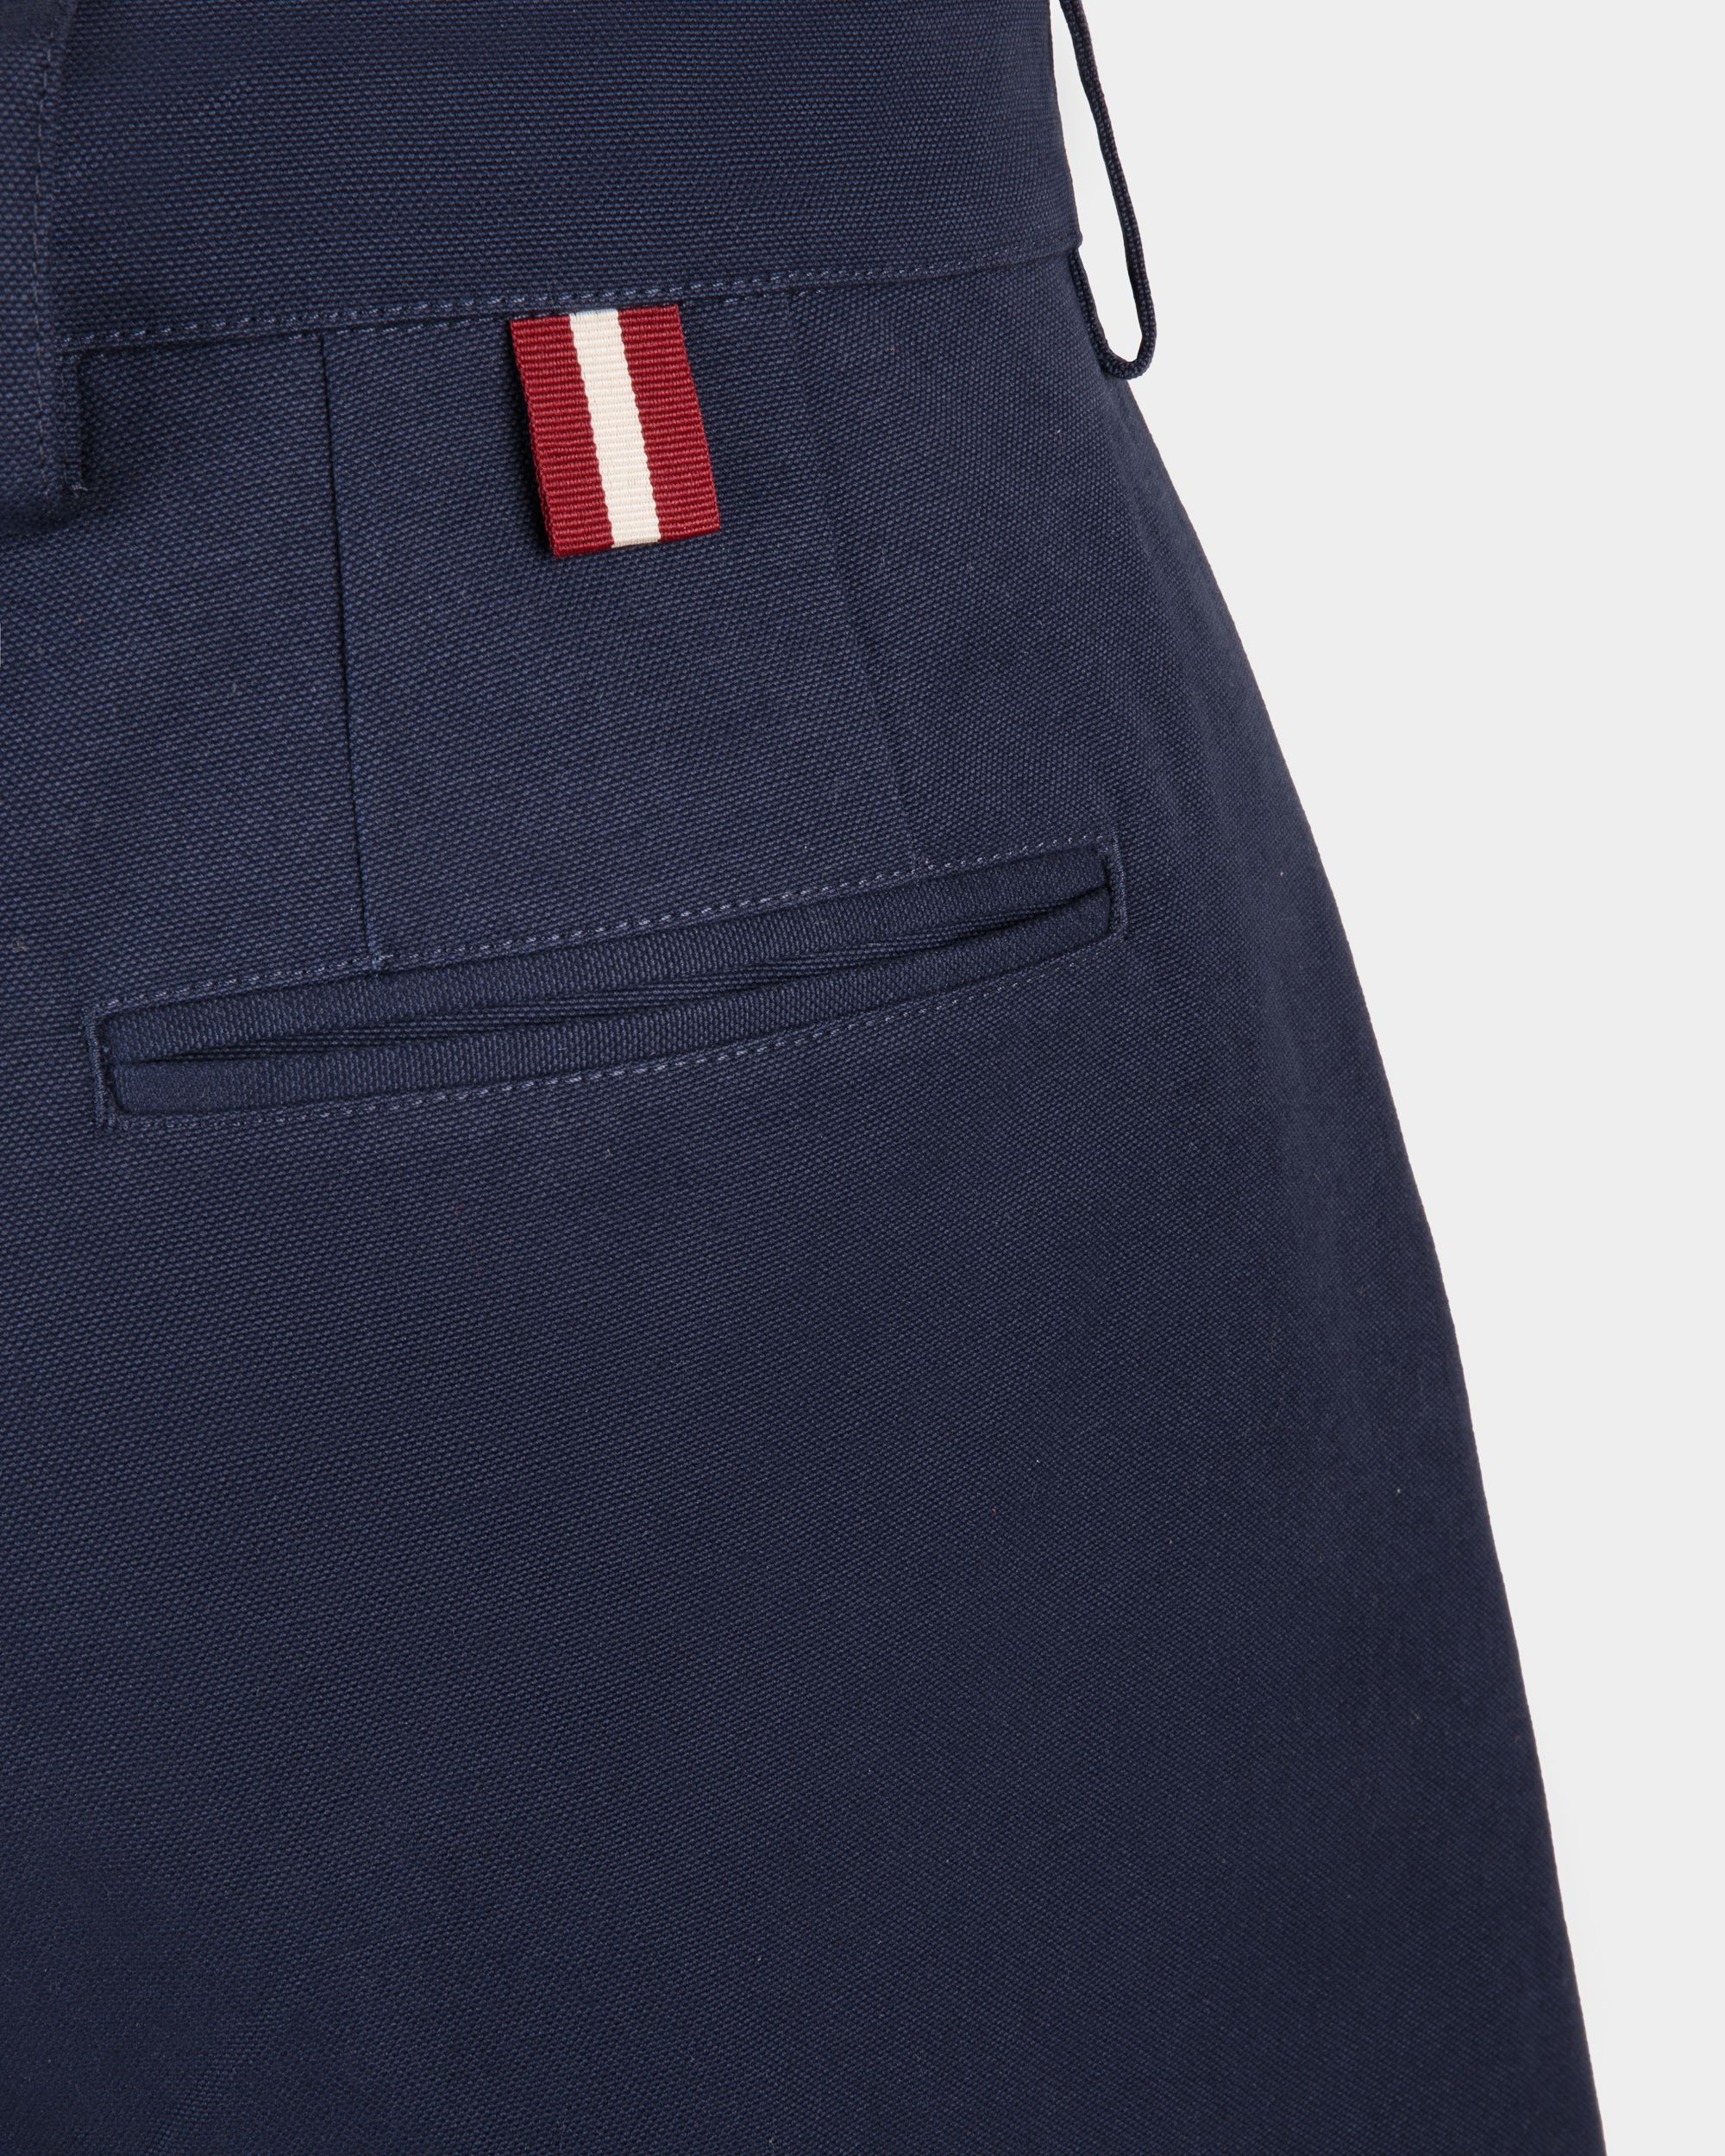 Shorts für Herren aus marineblauer Baumwolle | Bally | Model getragen Detail